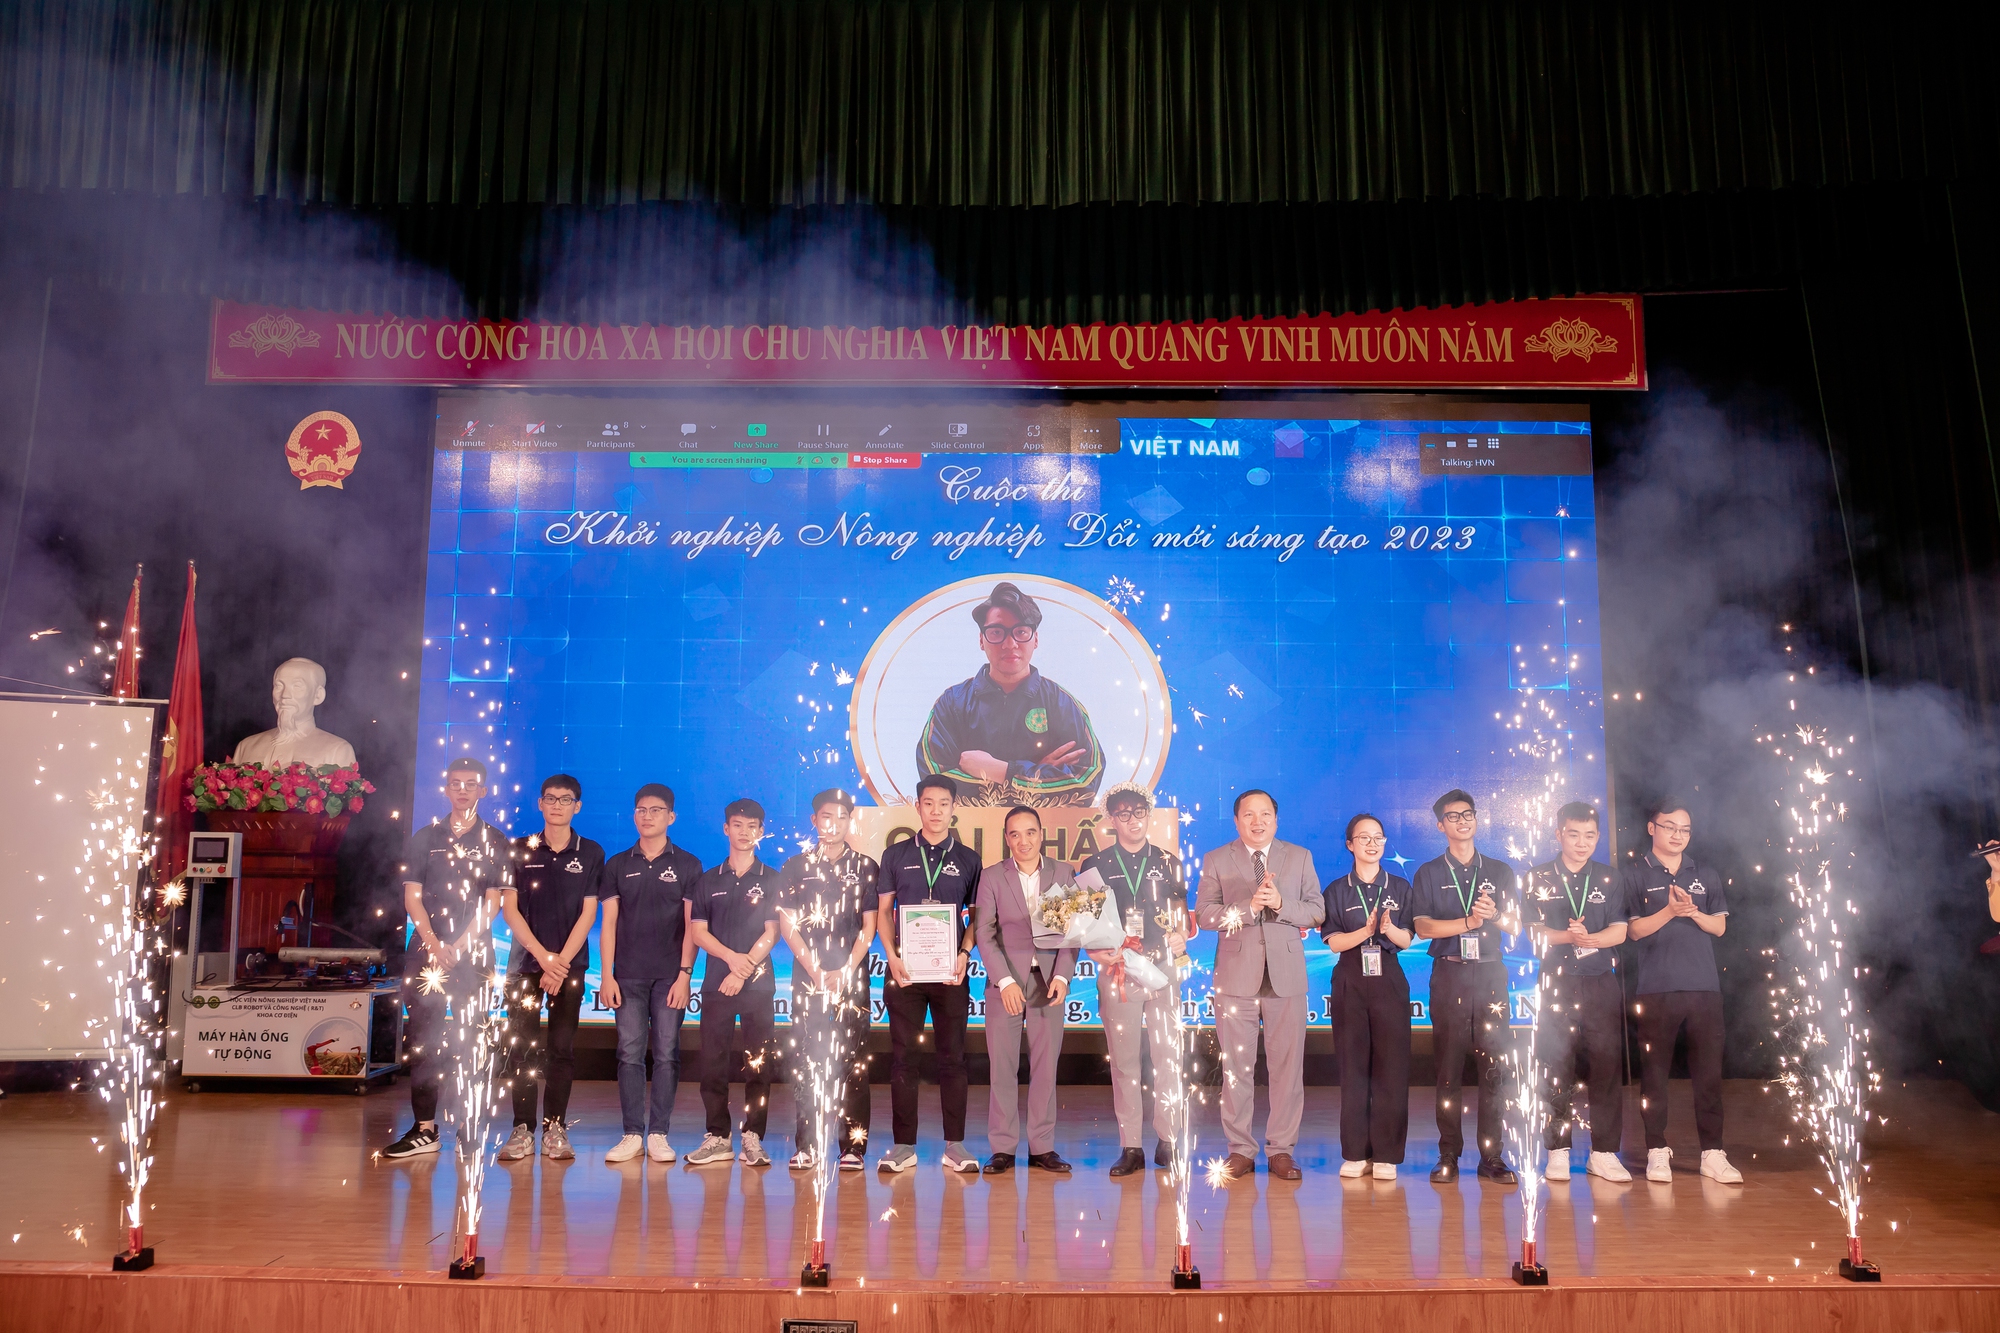 Chế tạo máy hàn tự động, sinh viên Học viện Nông nghiệp Việt Nam giành giải Nhất cuộc thi khởi nghiệp - Ảnh 1.